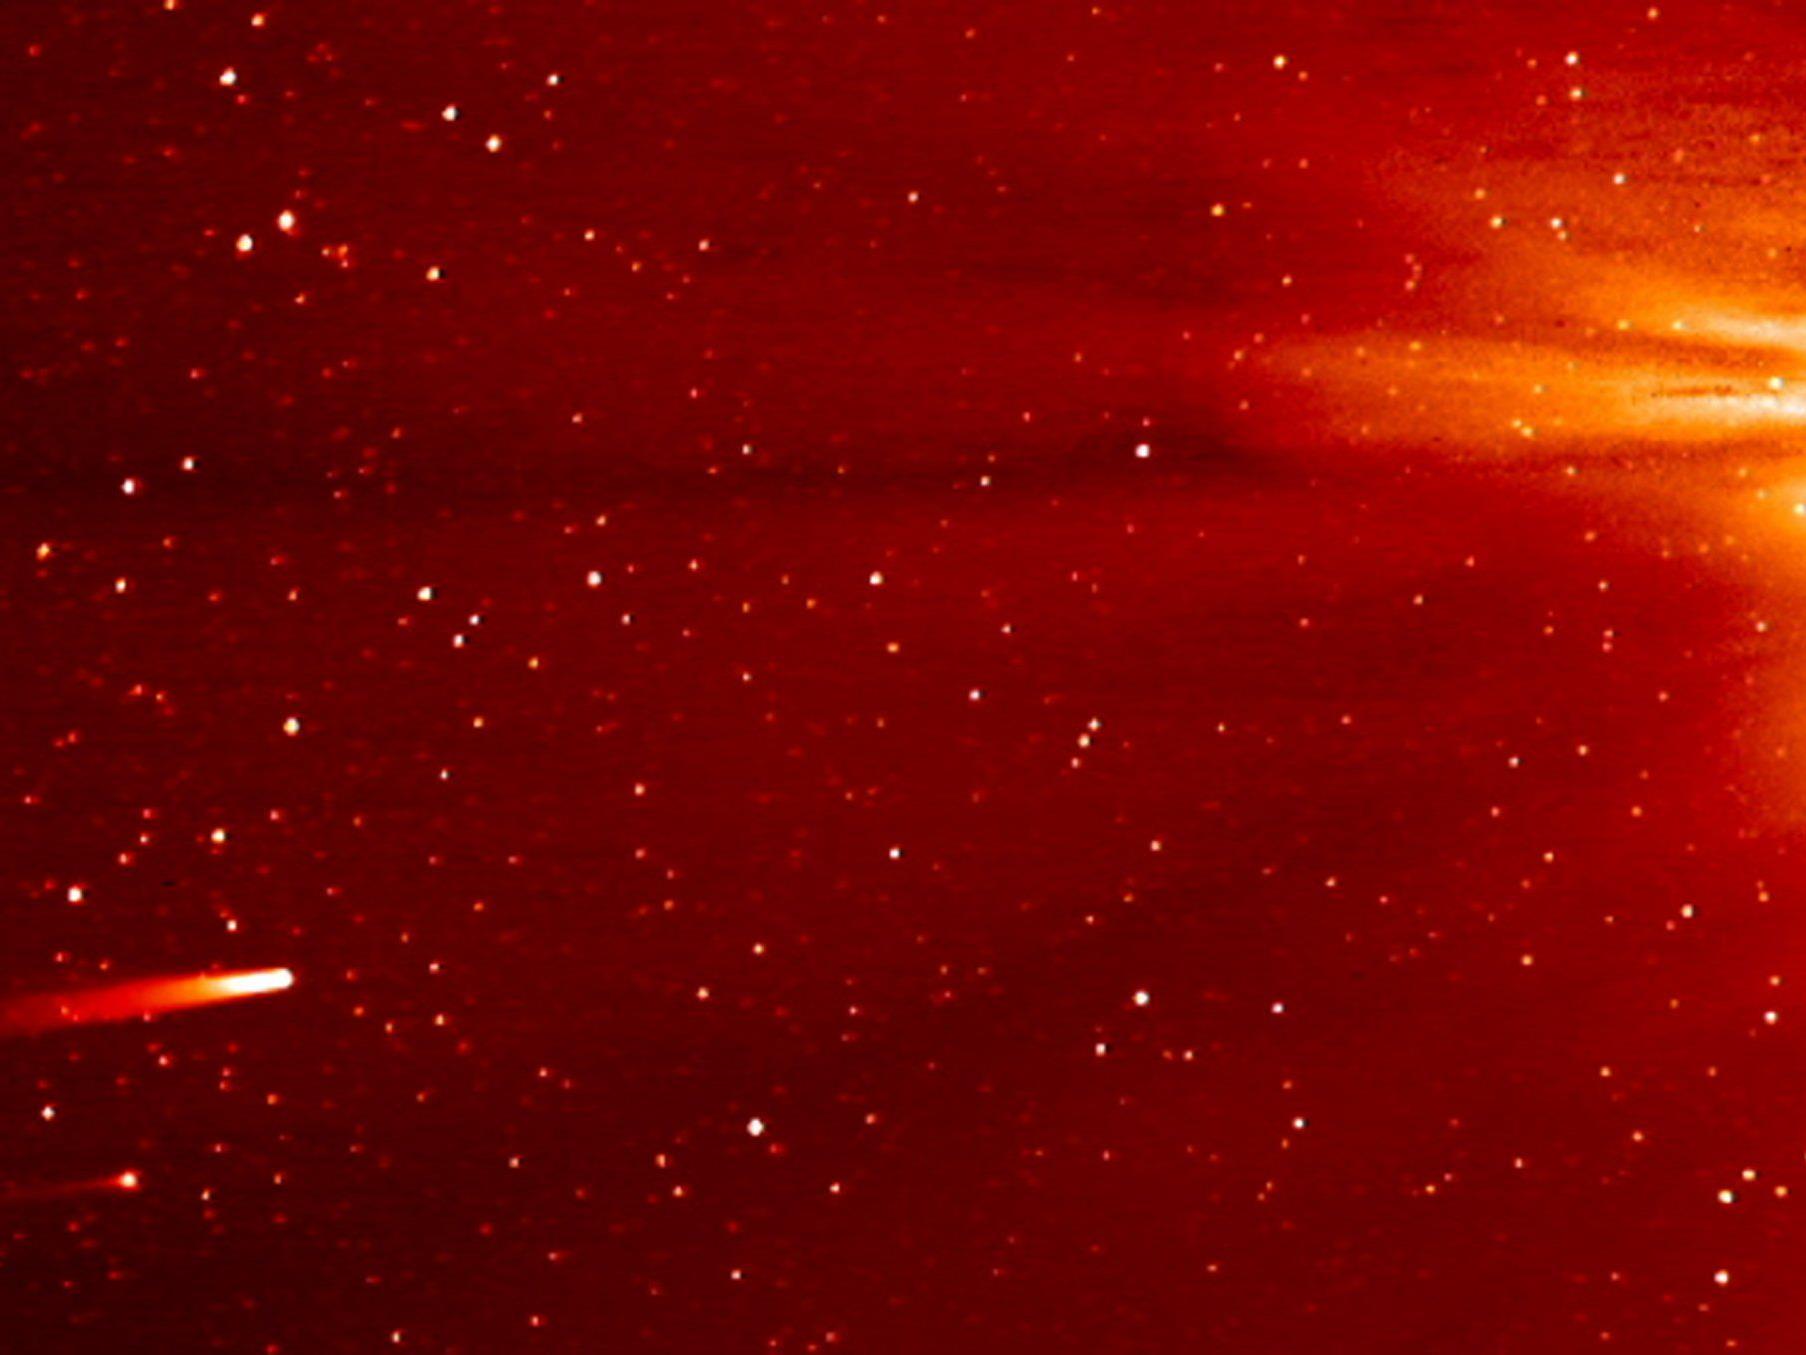 Kometenkern hatte ursprünglich einen Durchmesser von mehreren Kilometern.